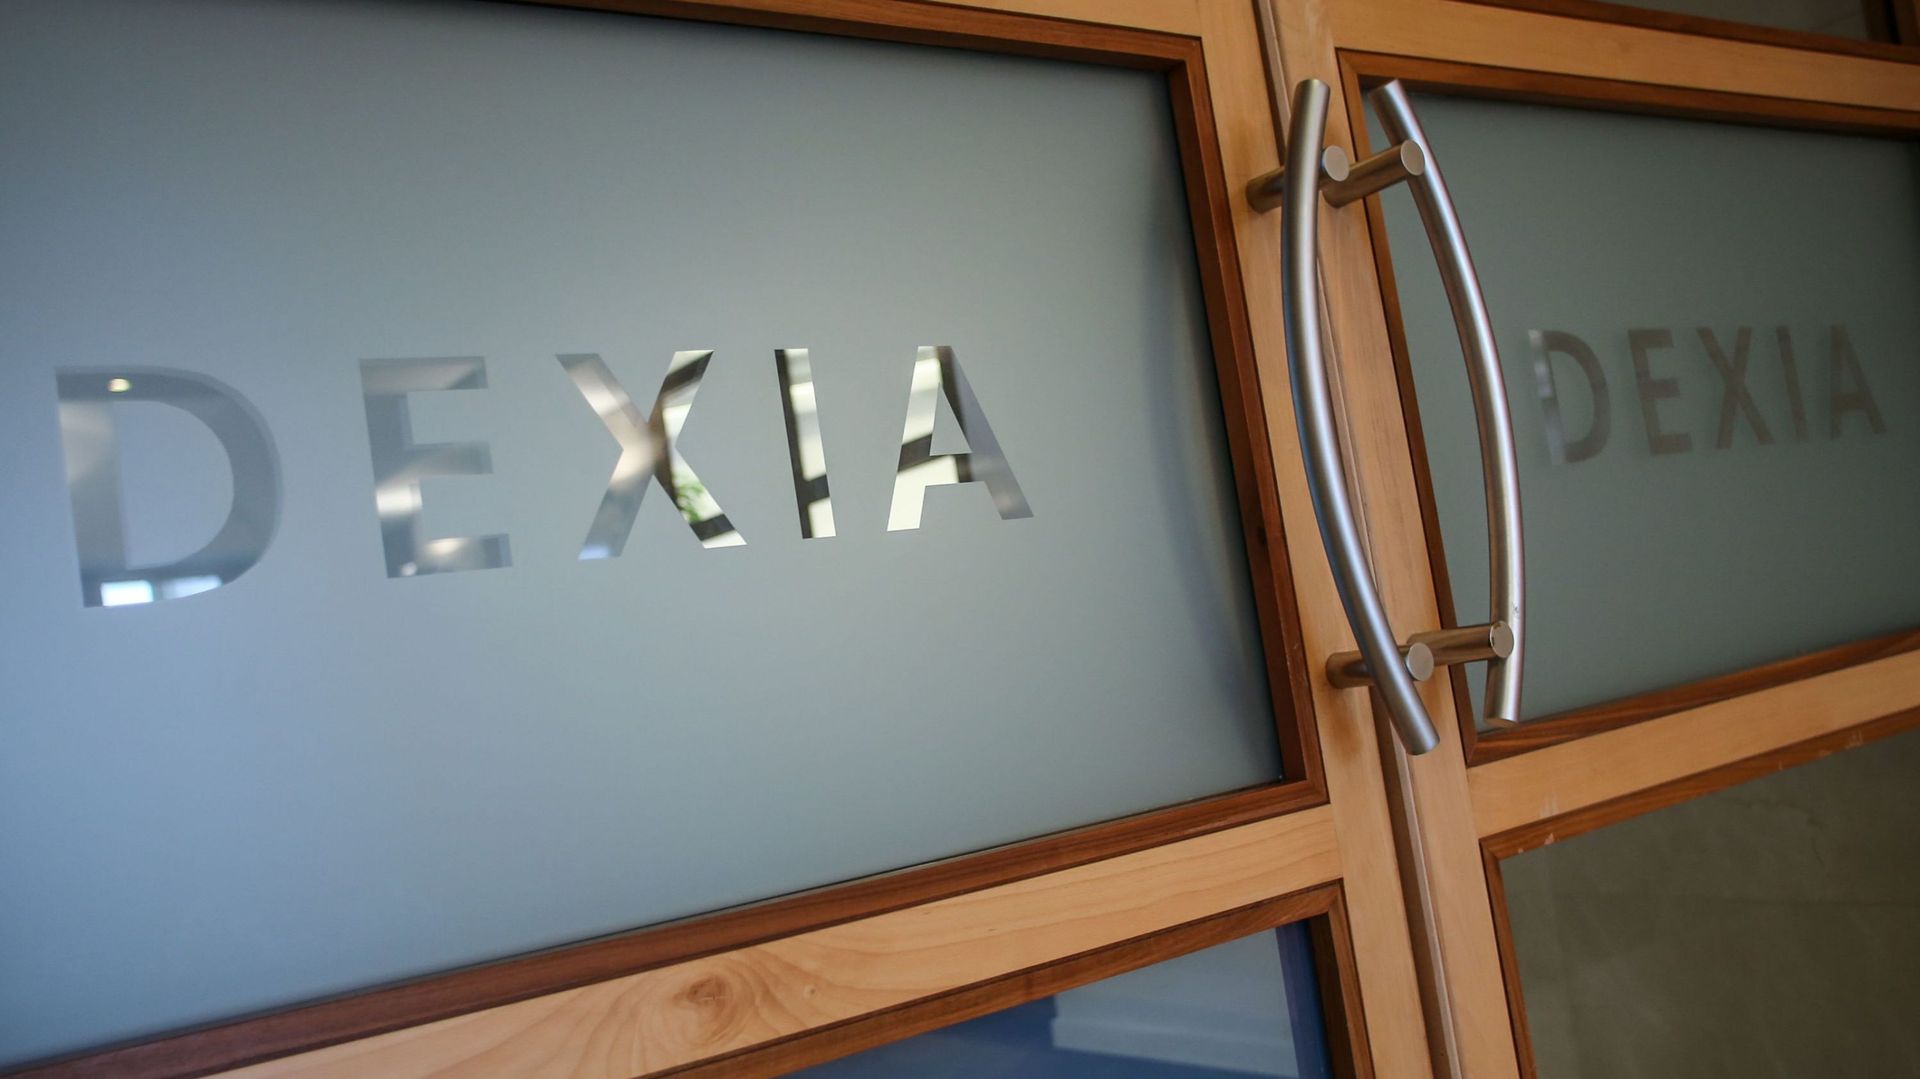 Dexia veut se retirer de la Bourse de Bruxelles et convoque une AG extraordinaire